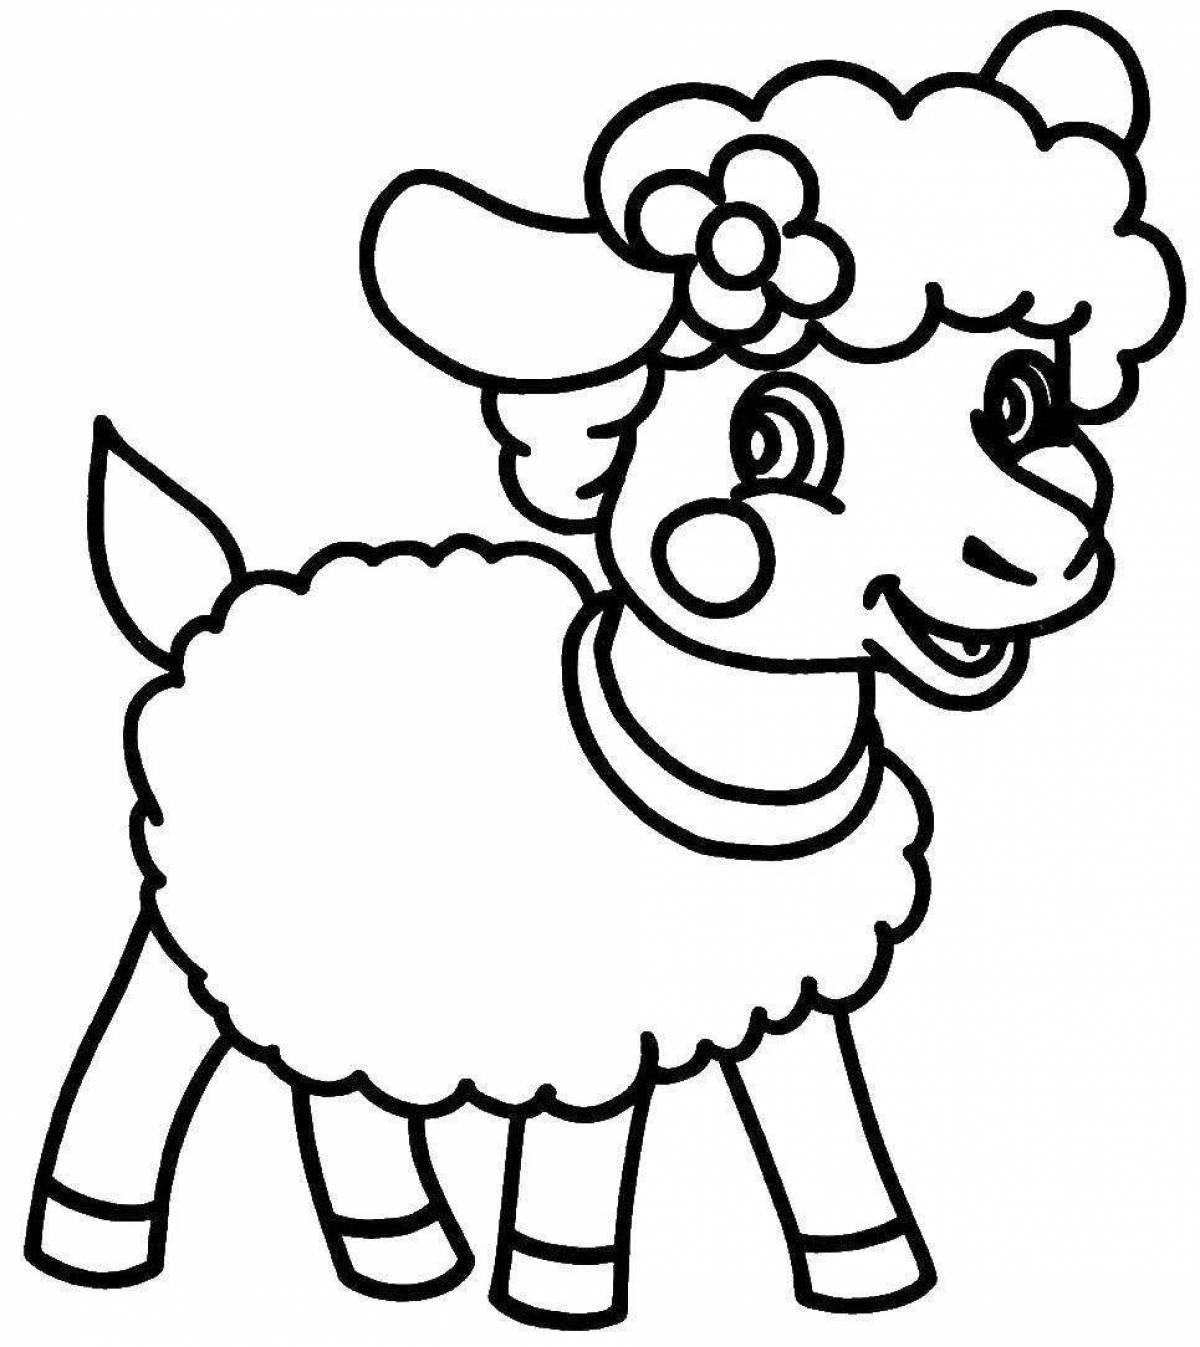 Увлекательная раскраска овечка для детей 2-3 лет